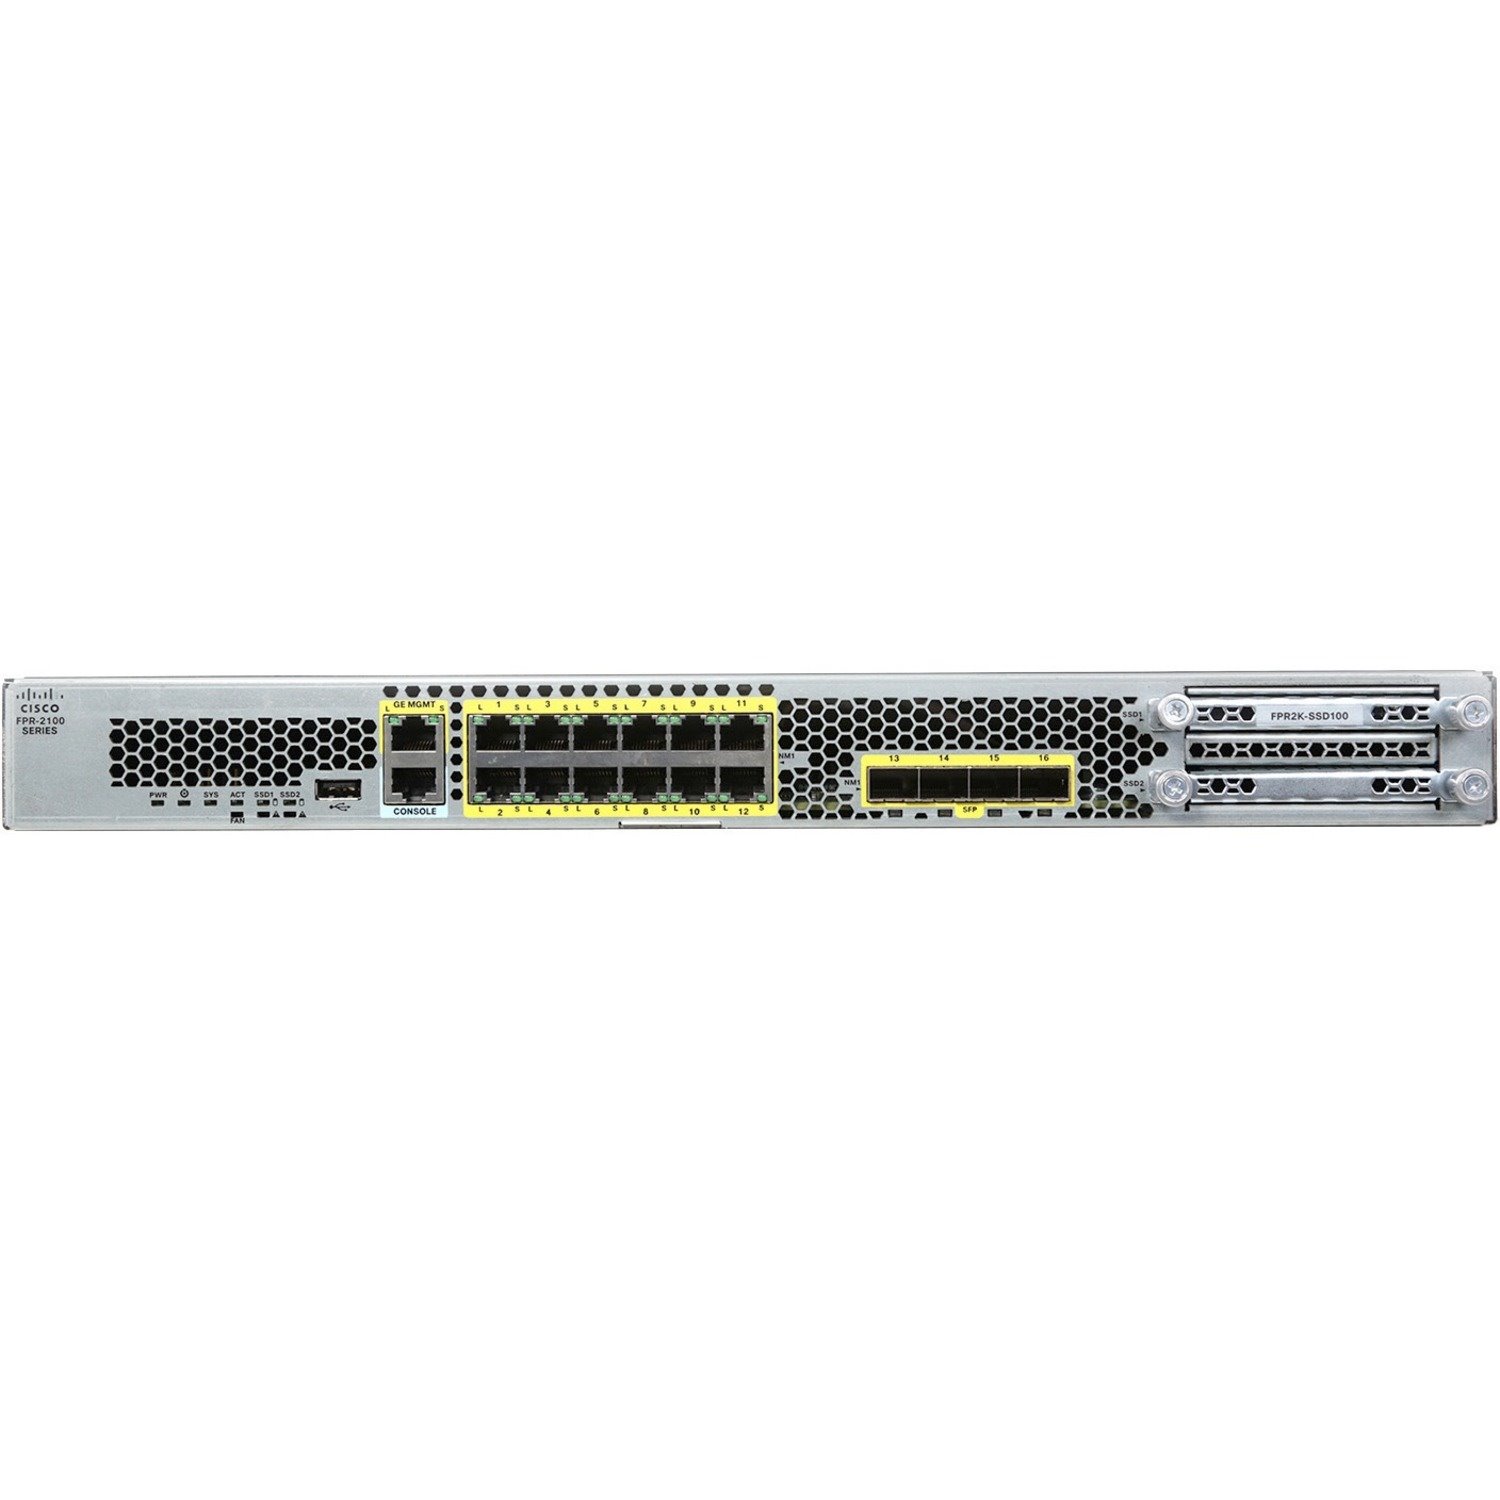 Cisco Firepower 2120 Network Security/Firewall Appliance